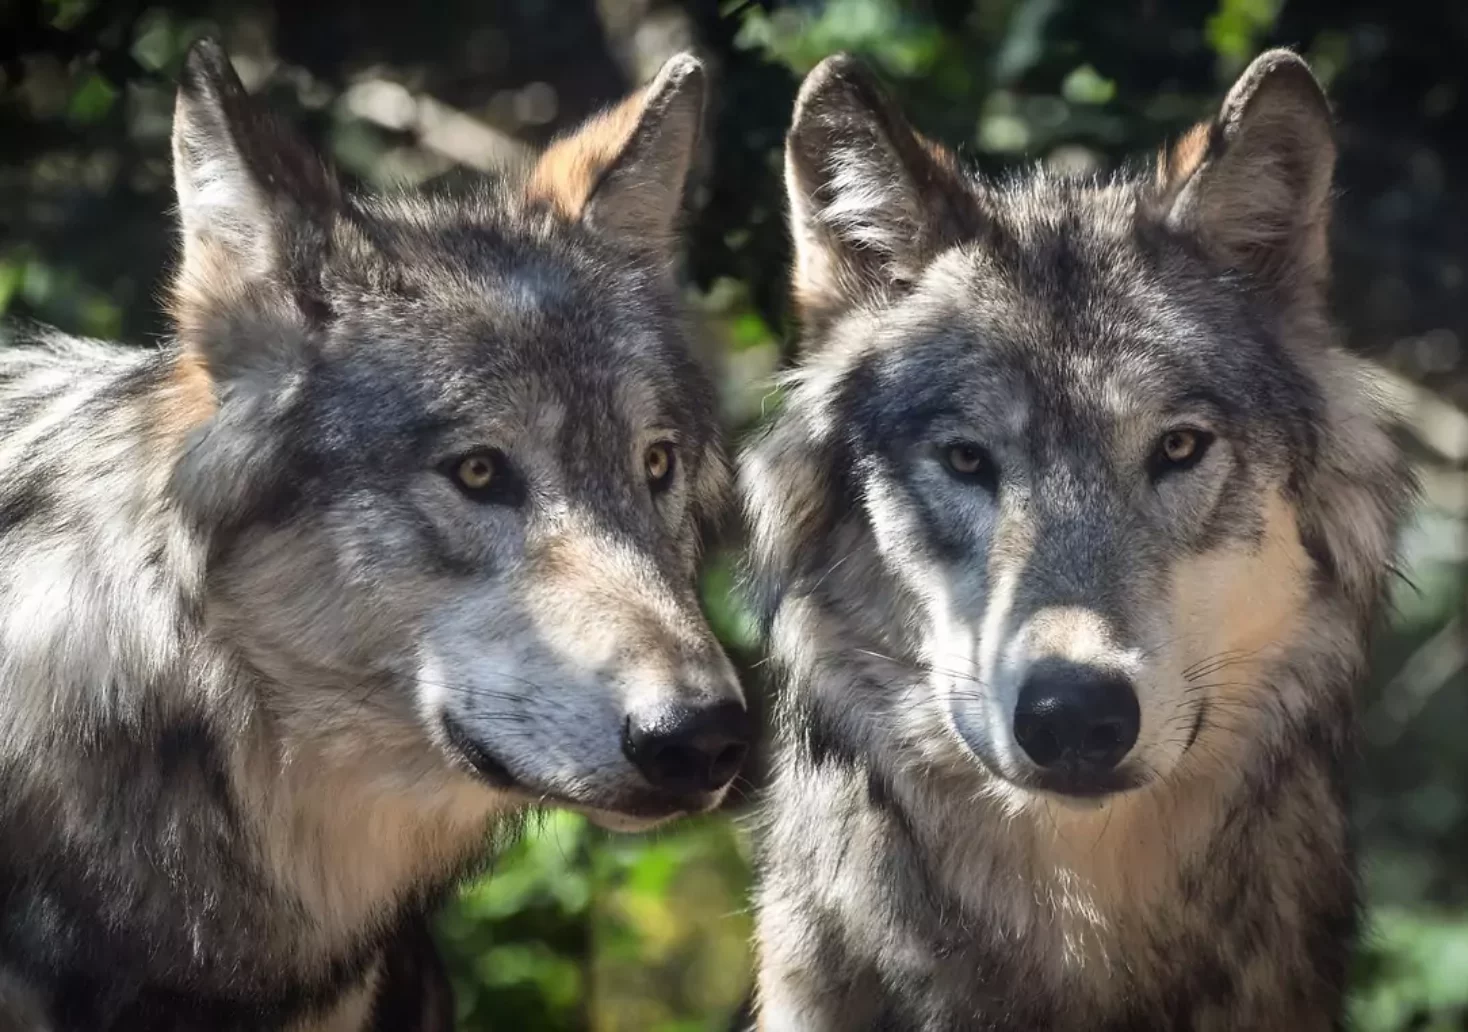 Das Bild auf 5min.at zeigt zwei Wölfe im Wald.